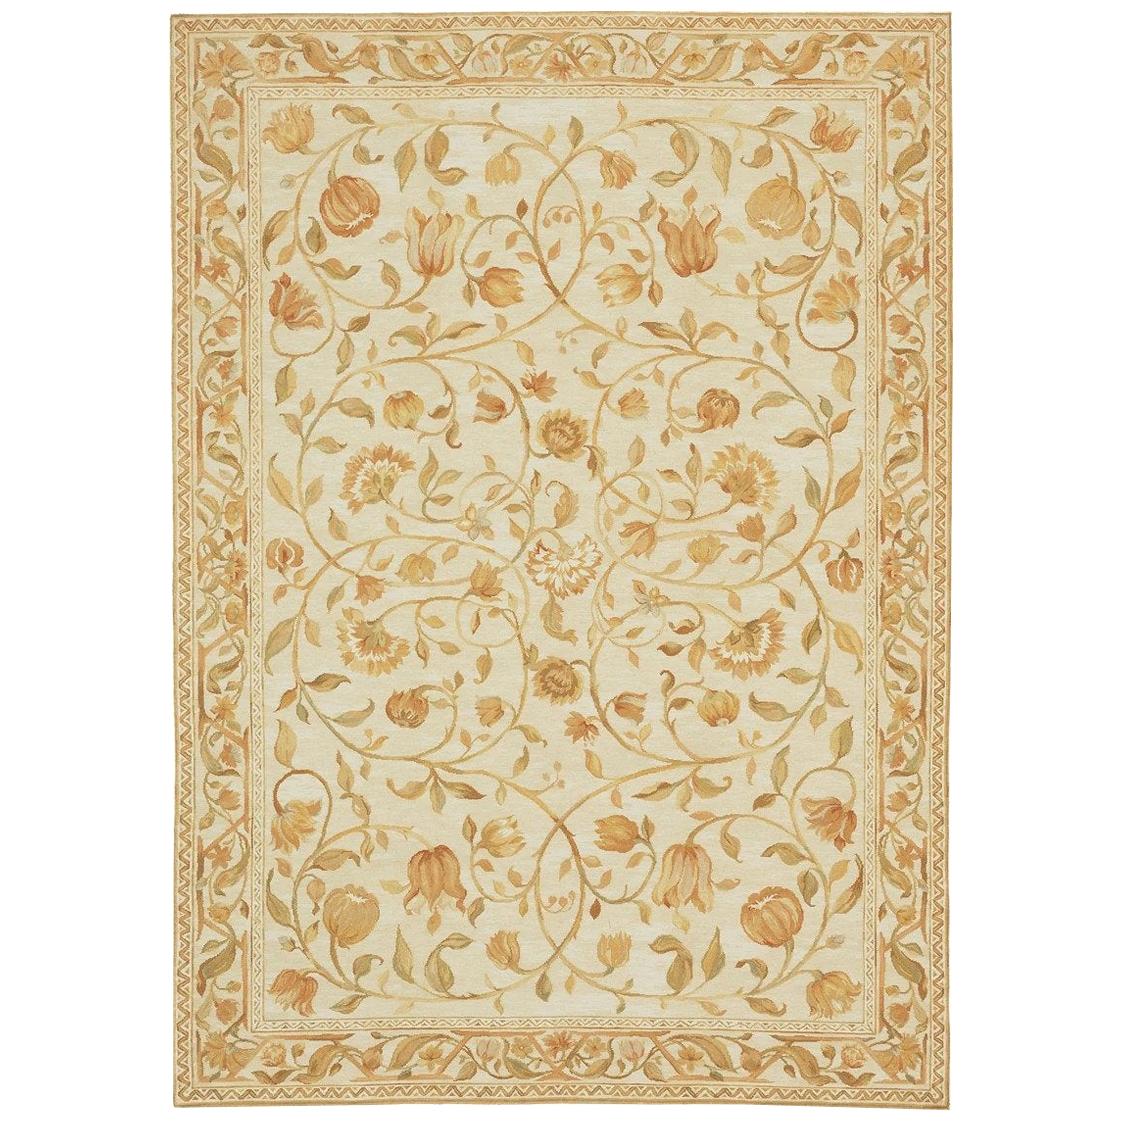 Luxury Savonnerie Teppich aus Wolle in Elfenbein / Elfenbein 10'2"x13'11"